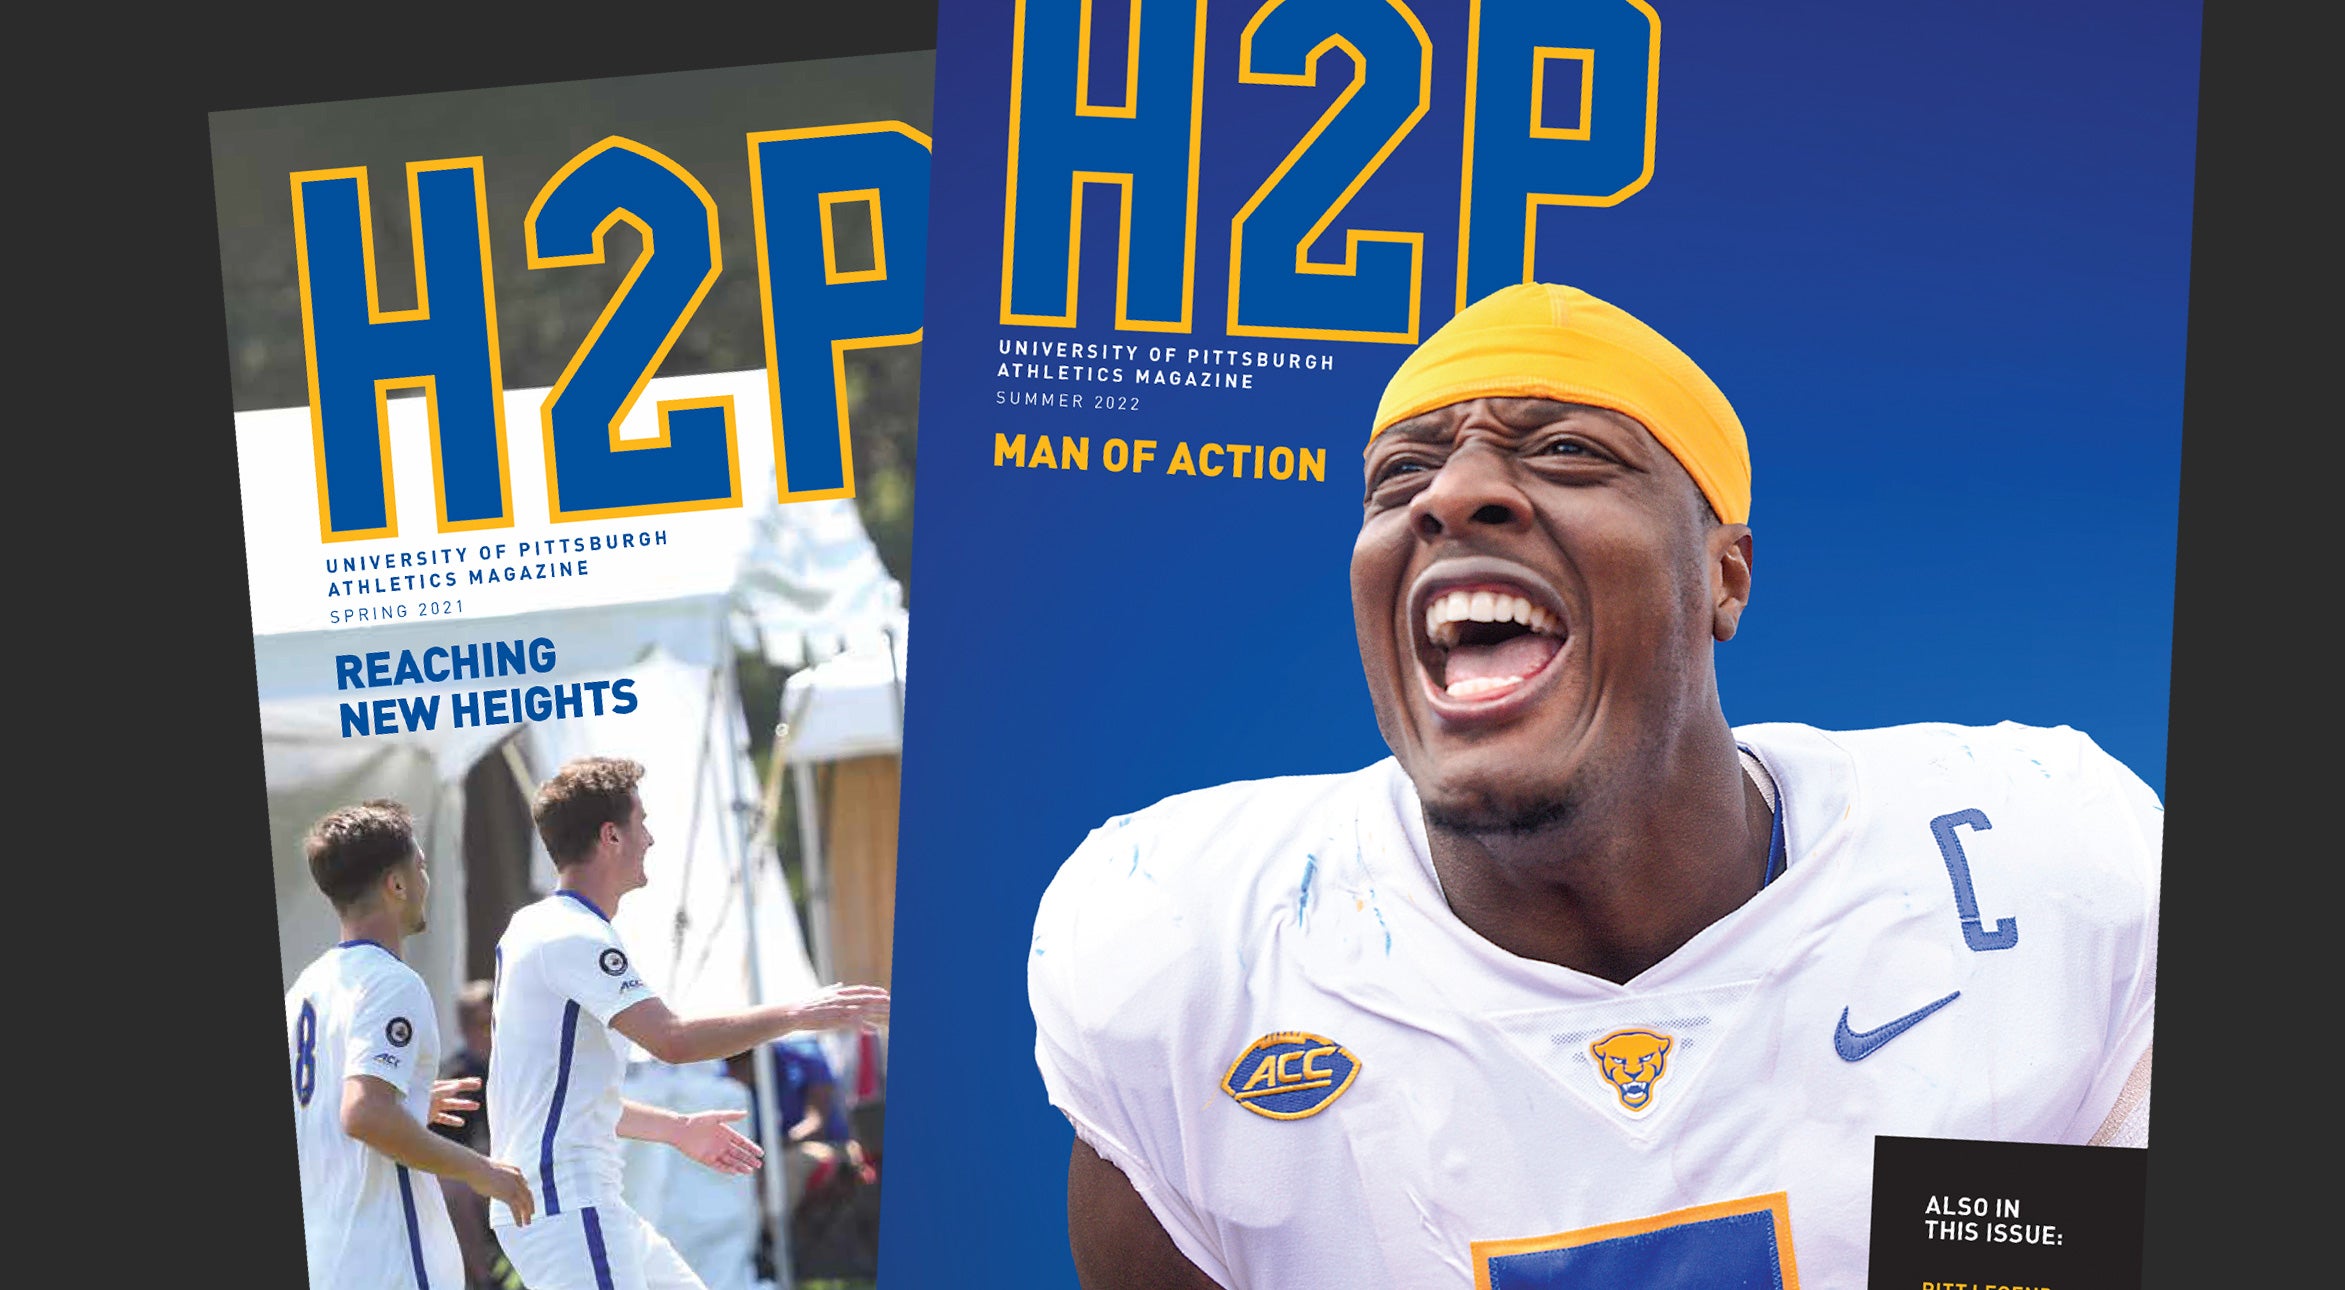 H2P Magazine cover